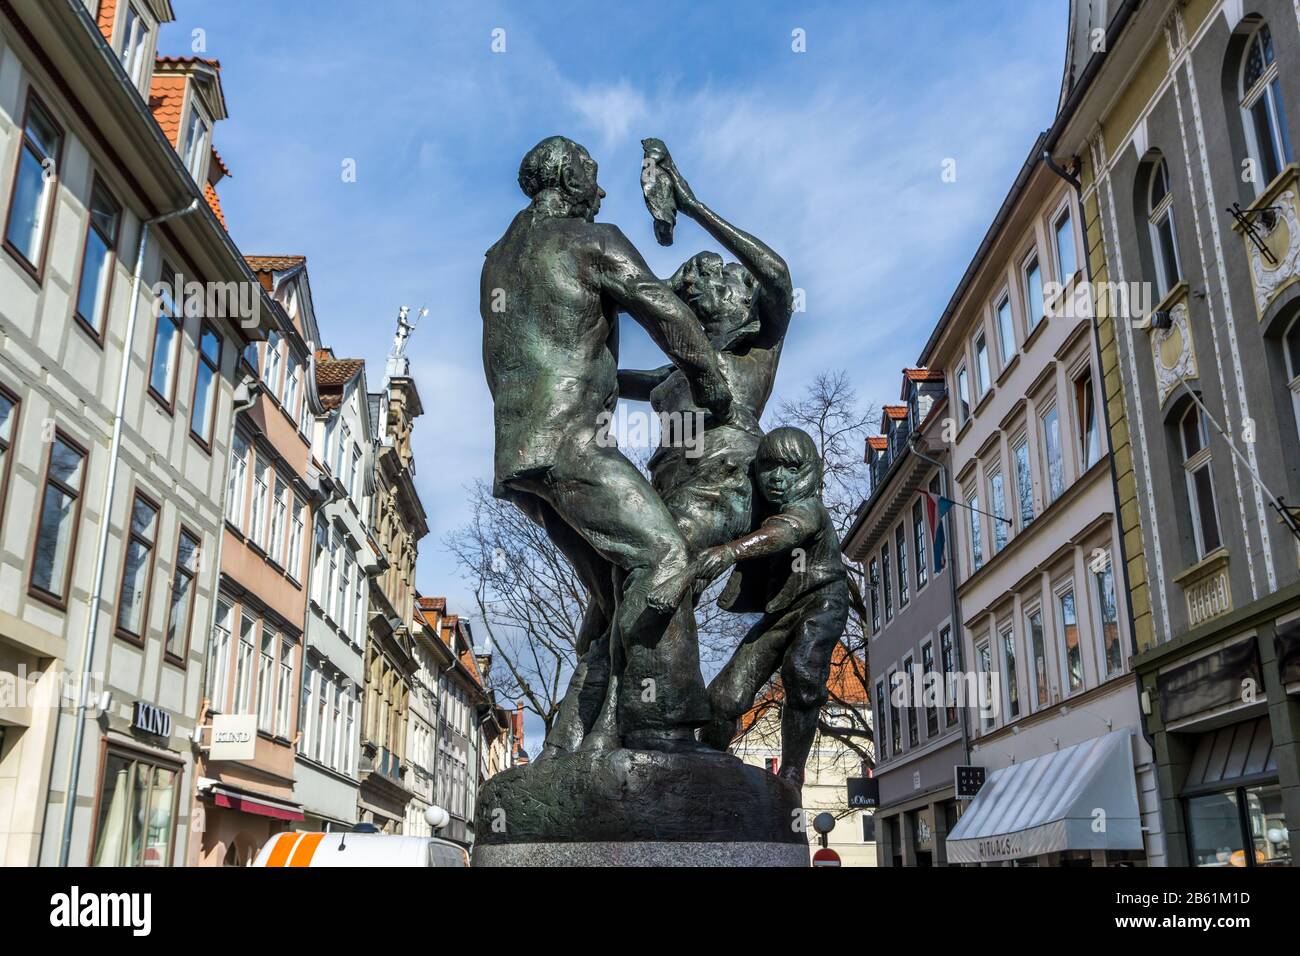 Bronzeplastik 'er Tanz' in der Fussgängerzone von Göttingen, Niedersachsen, Deutschland | bronze sculpture la danse Der Tanz au piéton z Banque D'Images